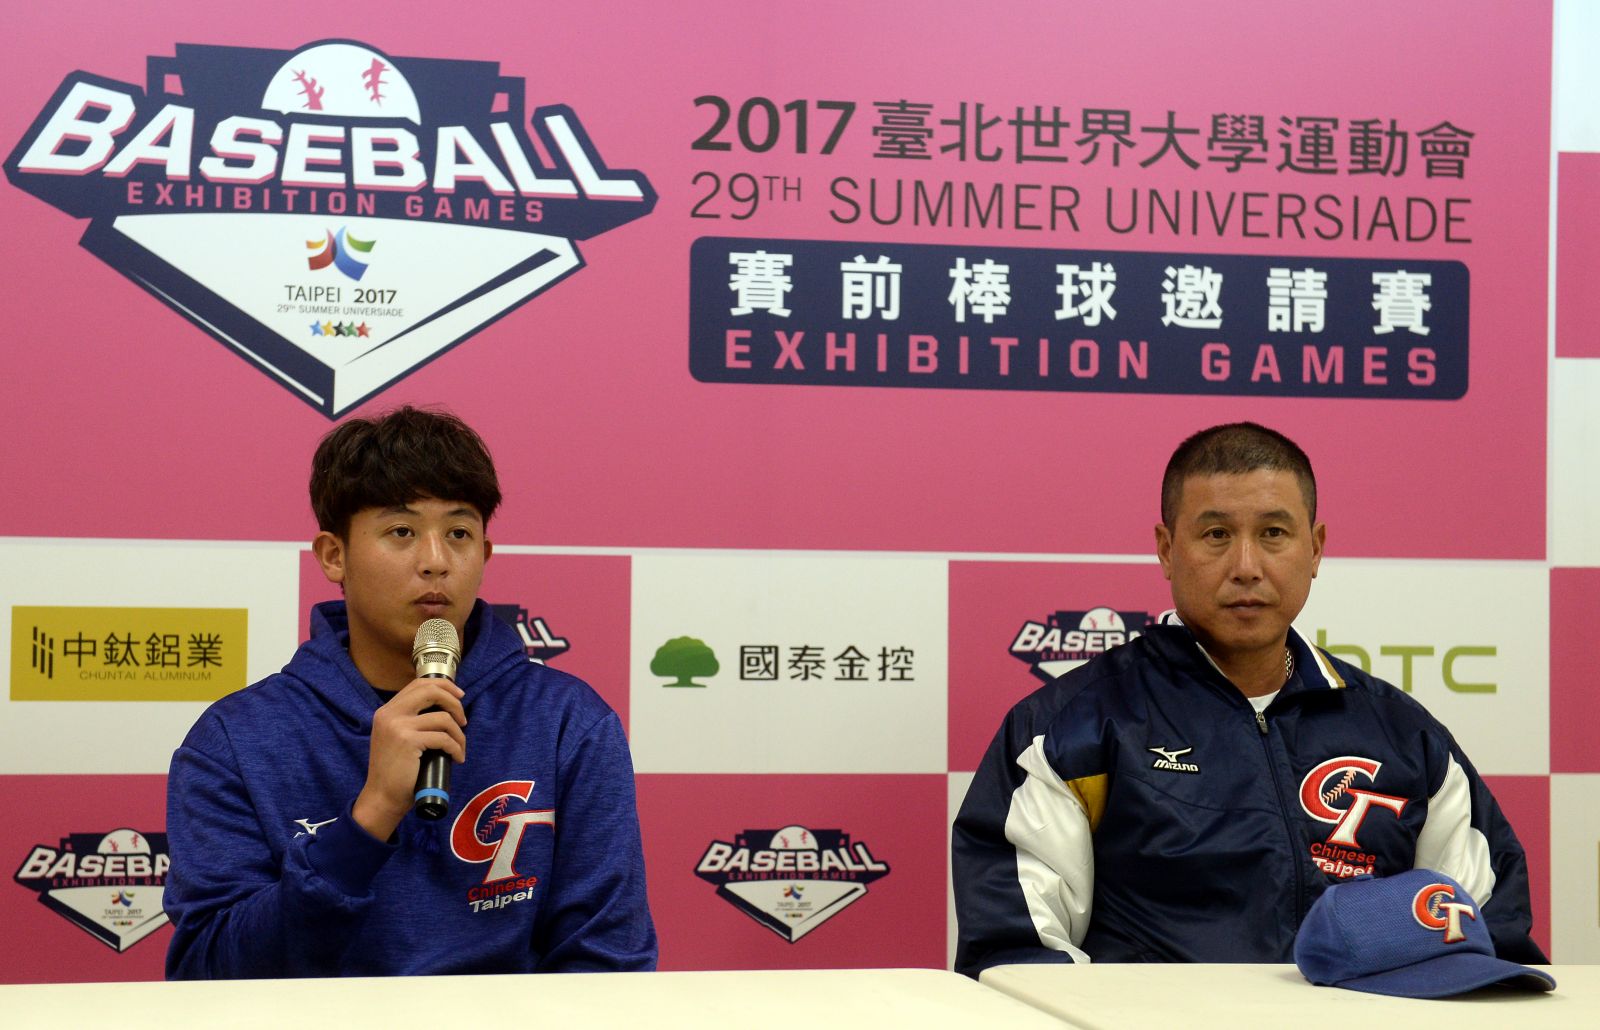 中華隊投手曾琦(左)與中華隊總教練郭李建夫(右)。